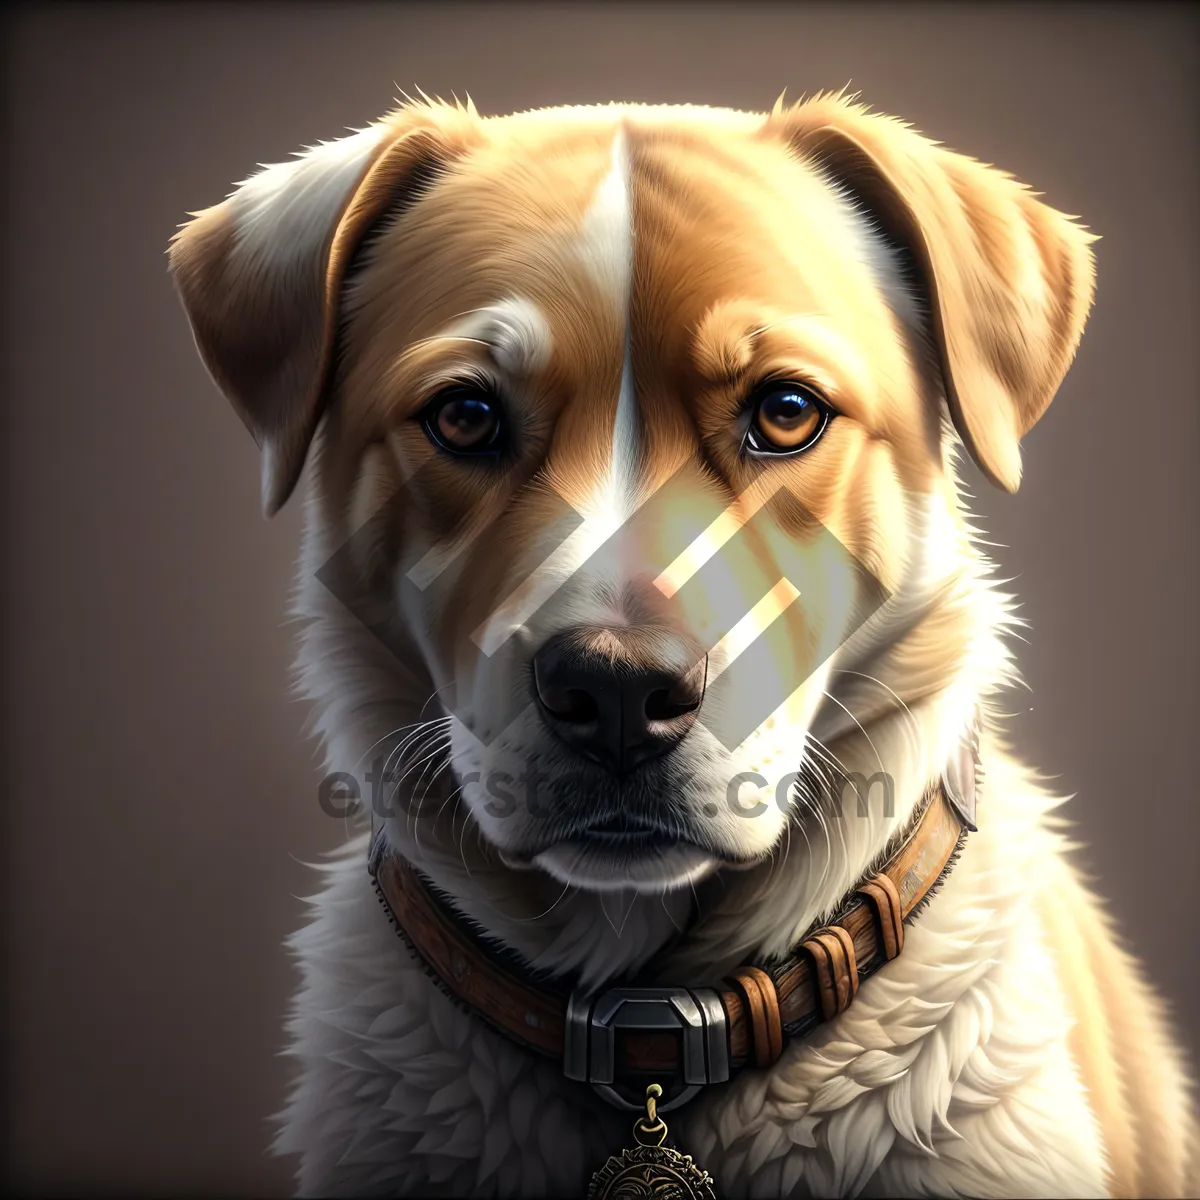 Picture of Golden Retriever Pup Looking Adorable in Studio Portrait